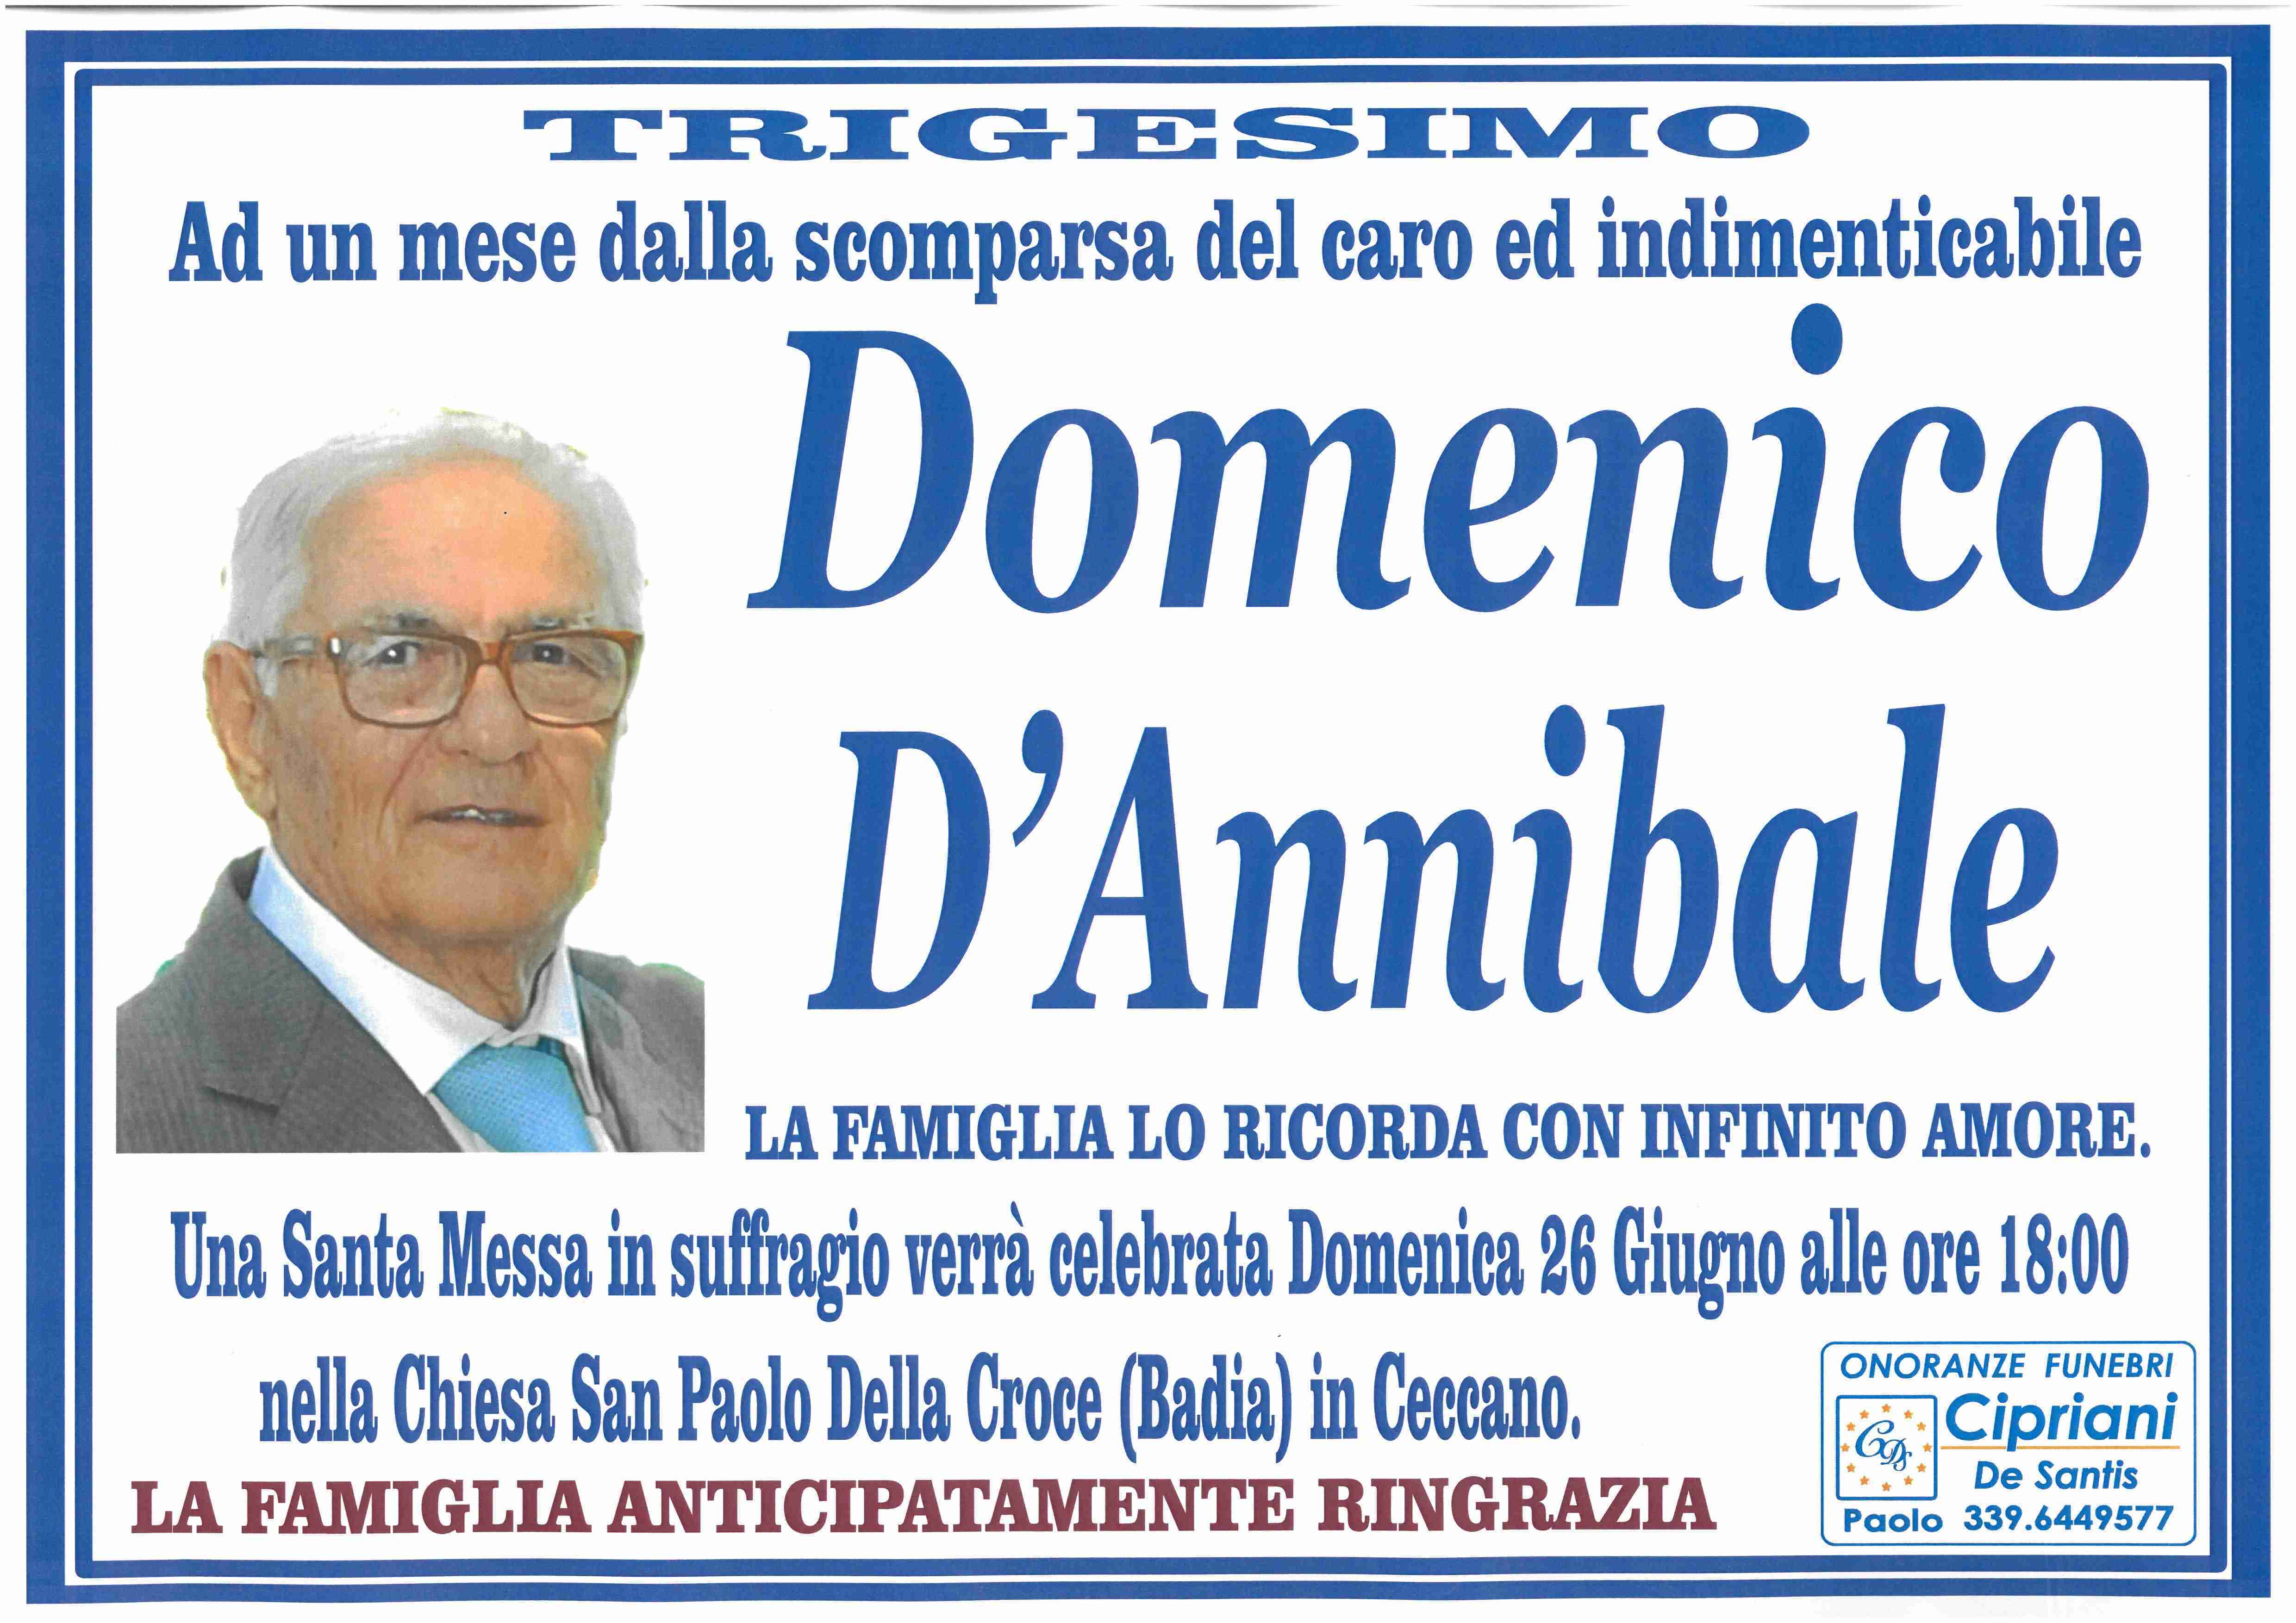 Domenico D'Annibale